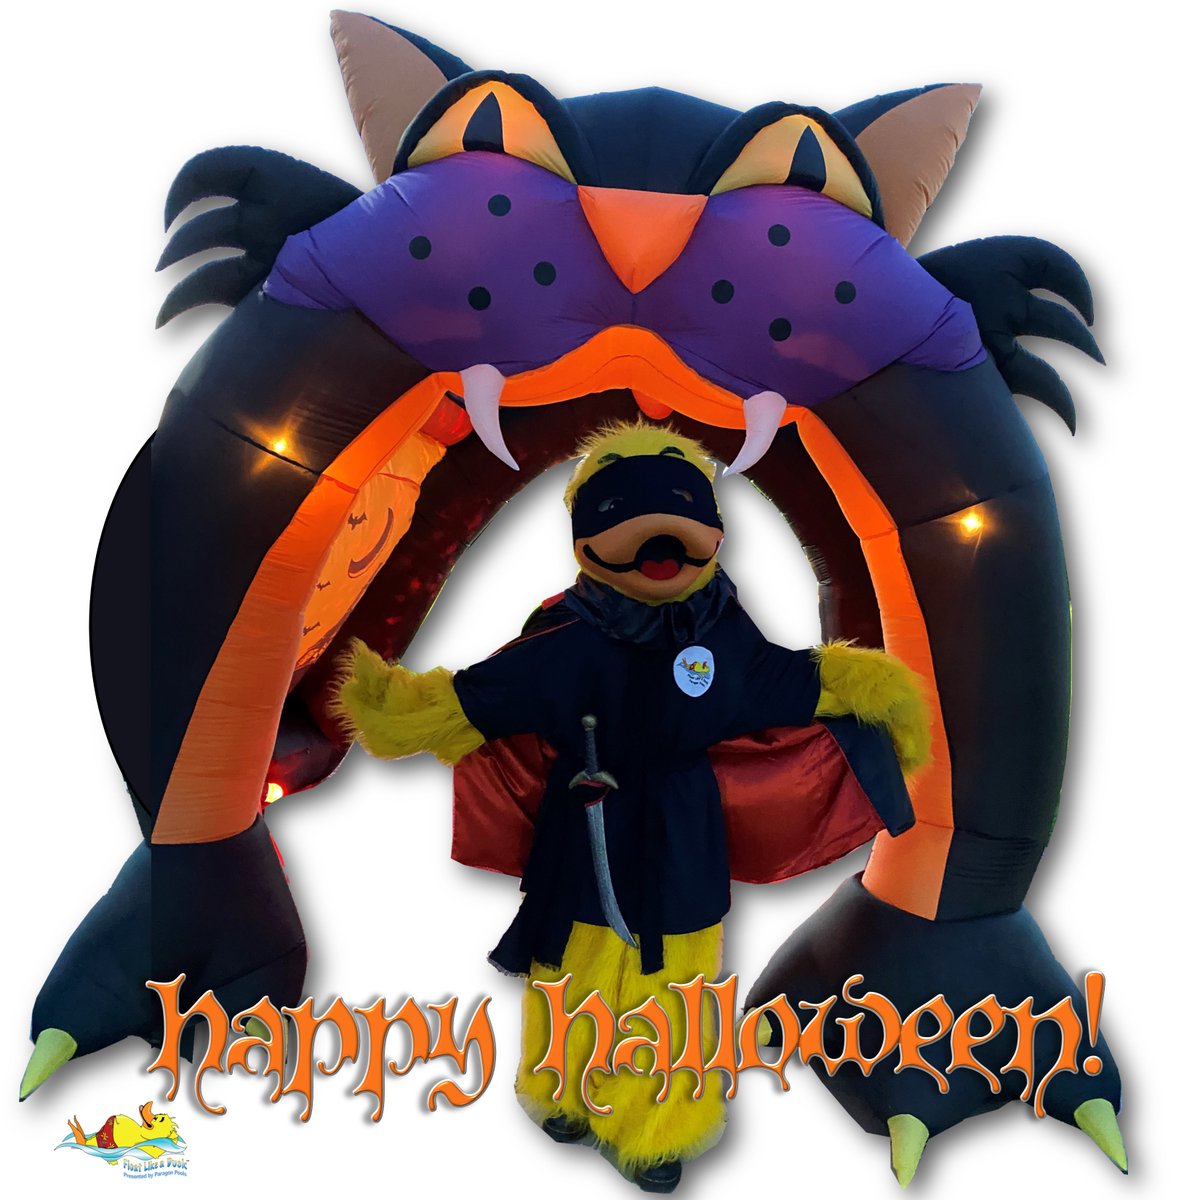 Happy Halloween!
#HappyHalloween #zorroduckie #floatlikeaduck #paragonpoolslasvegas #watersafety #poolsafety